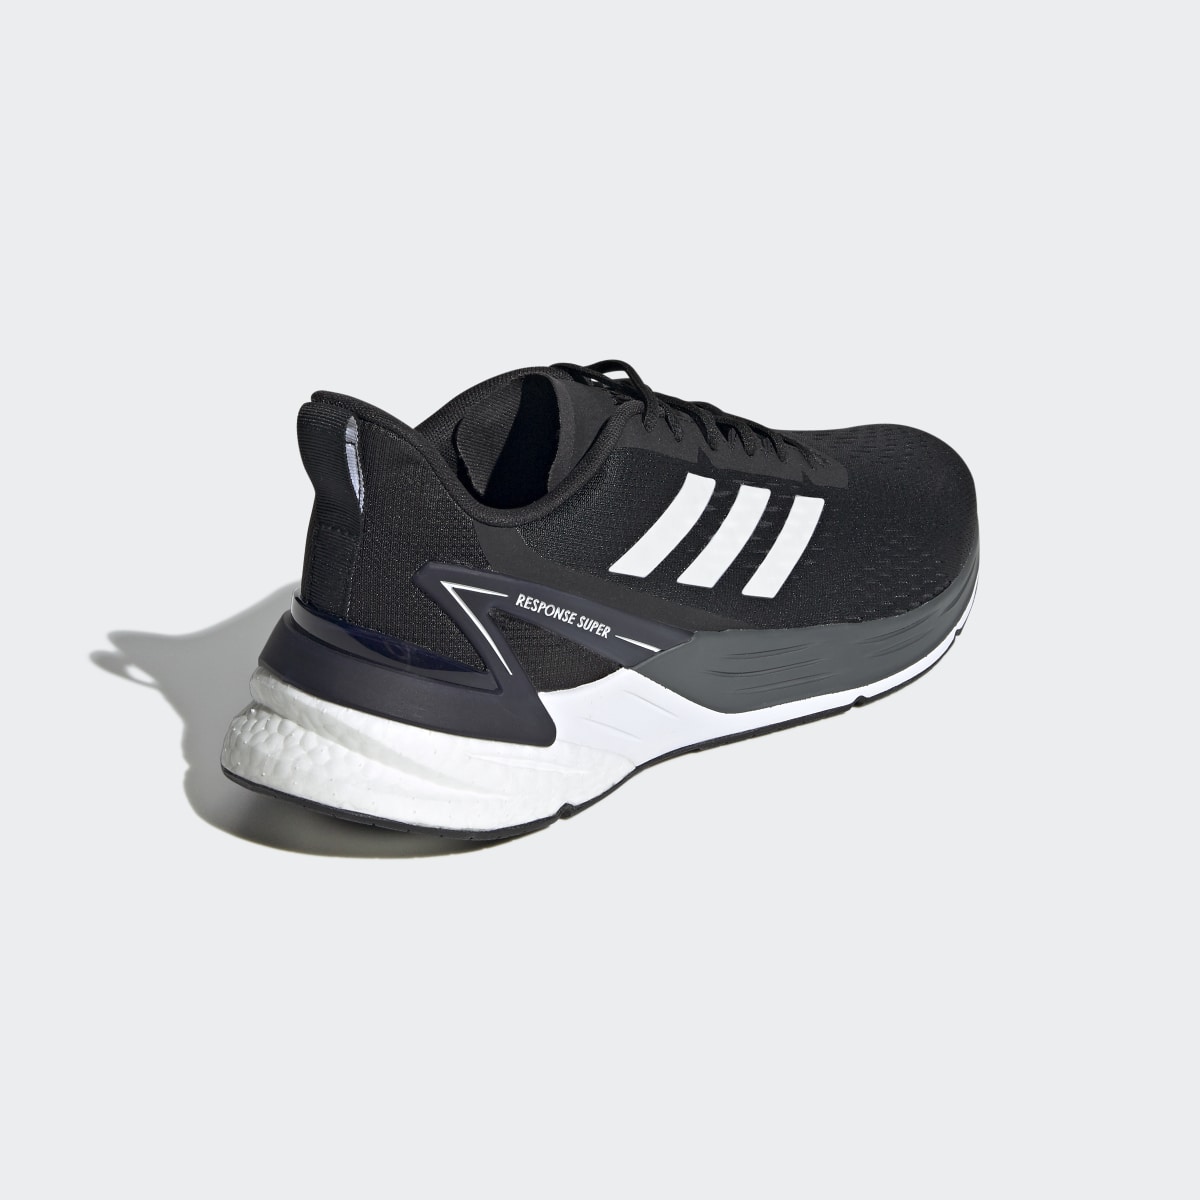 Adidas Response Super Ayakkabı. 6